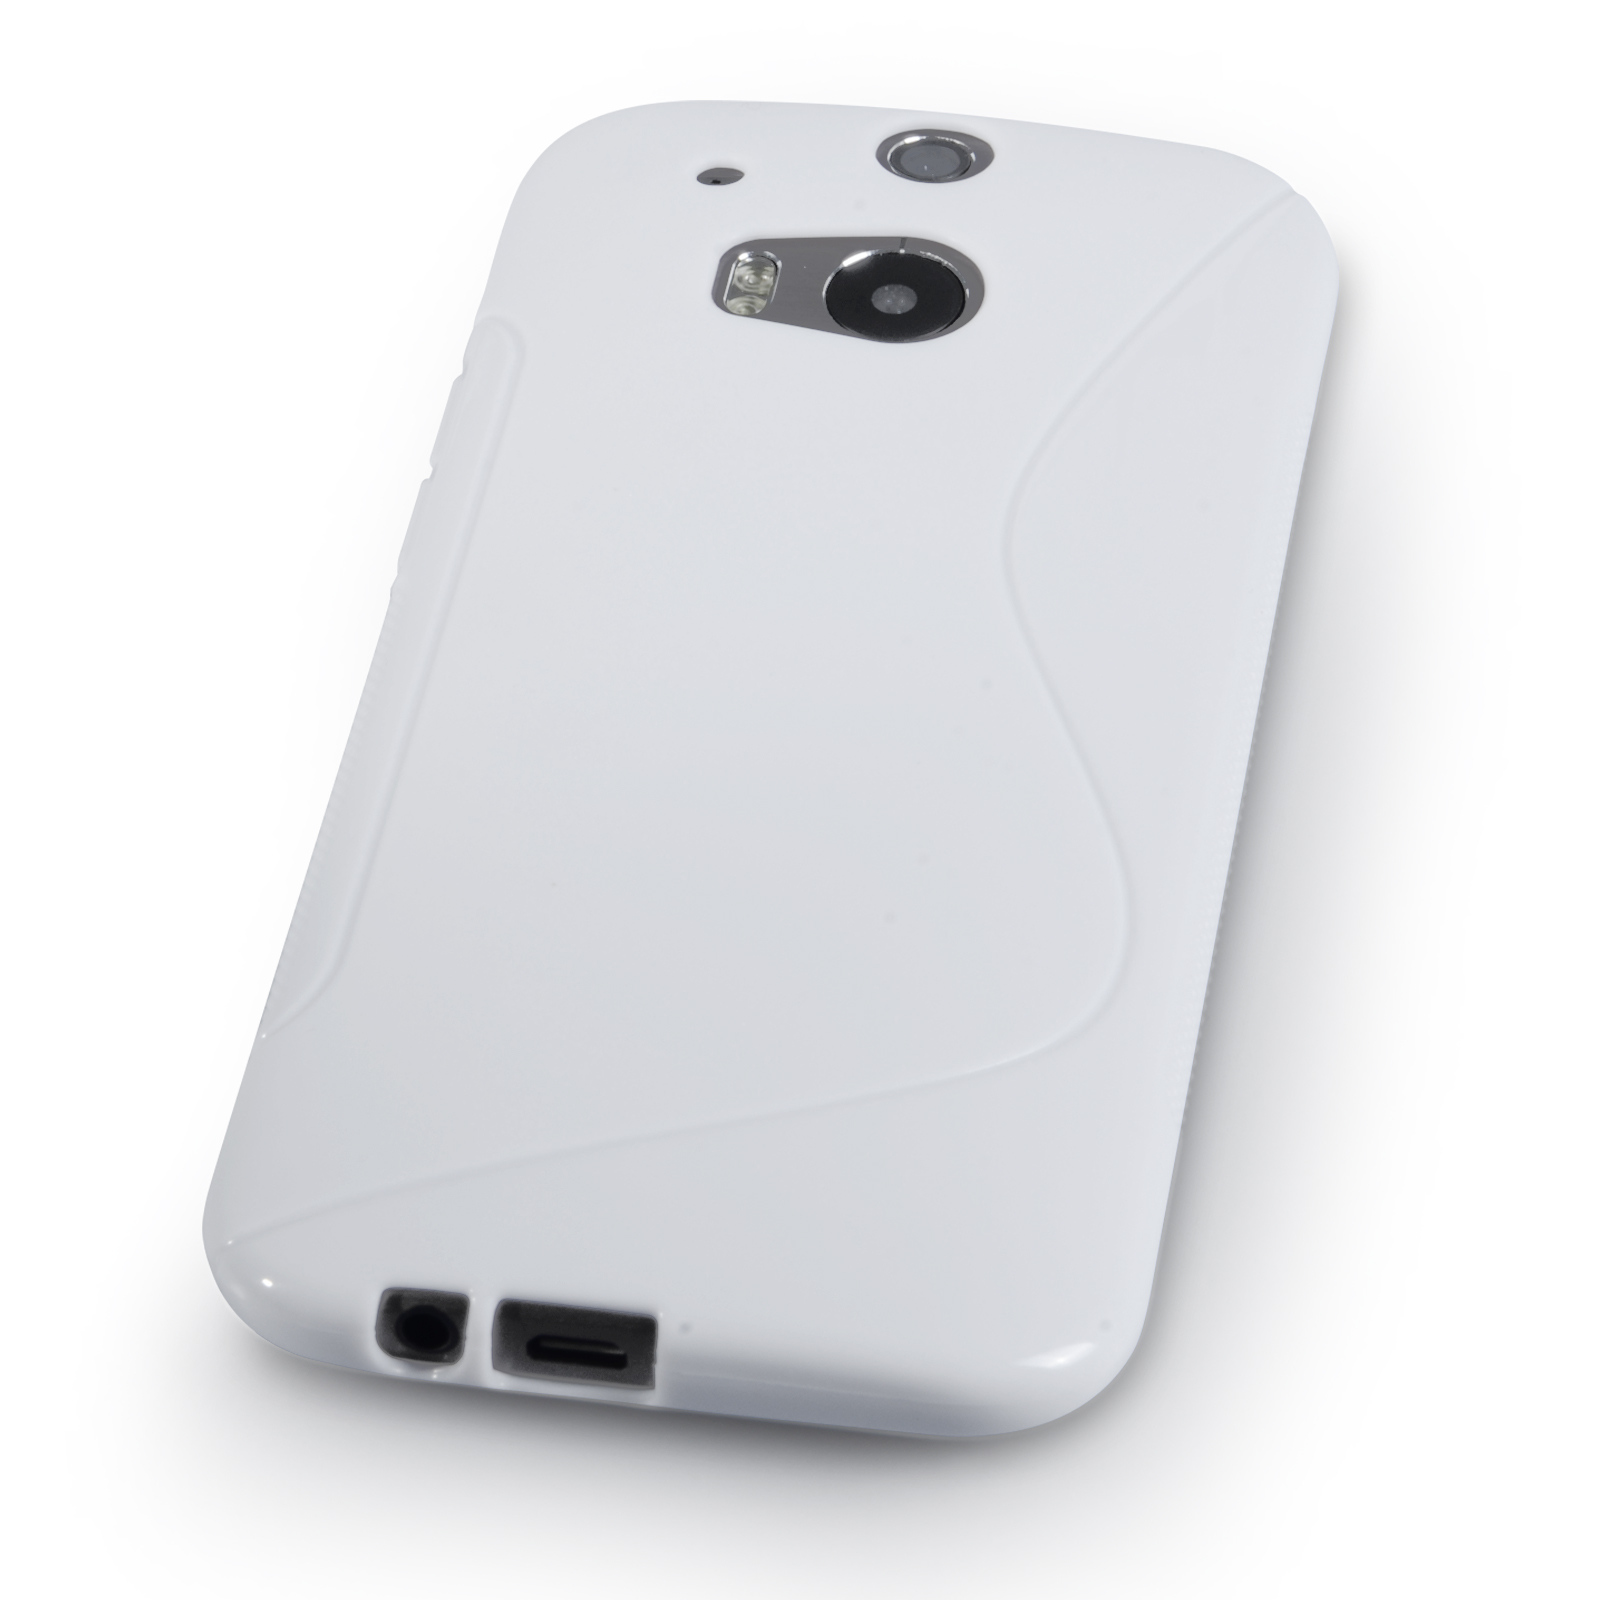 Caseflex HTC One M8 Silicone Gel S-Line Case - White